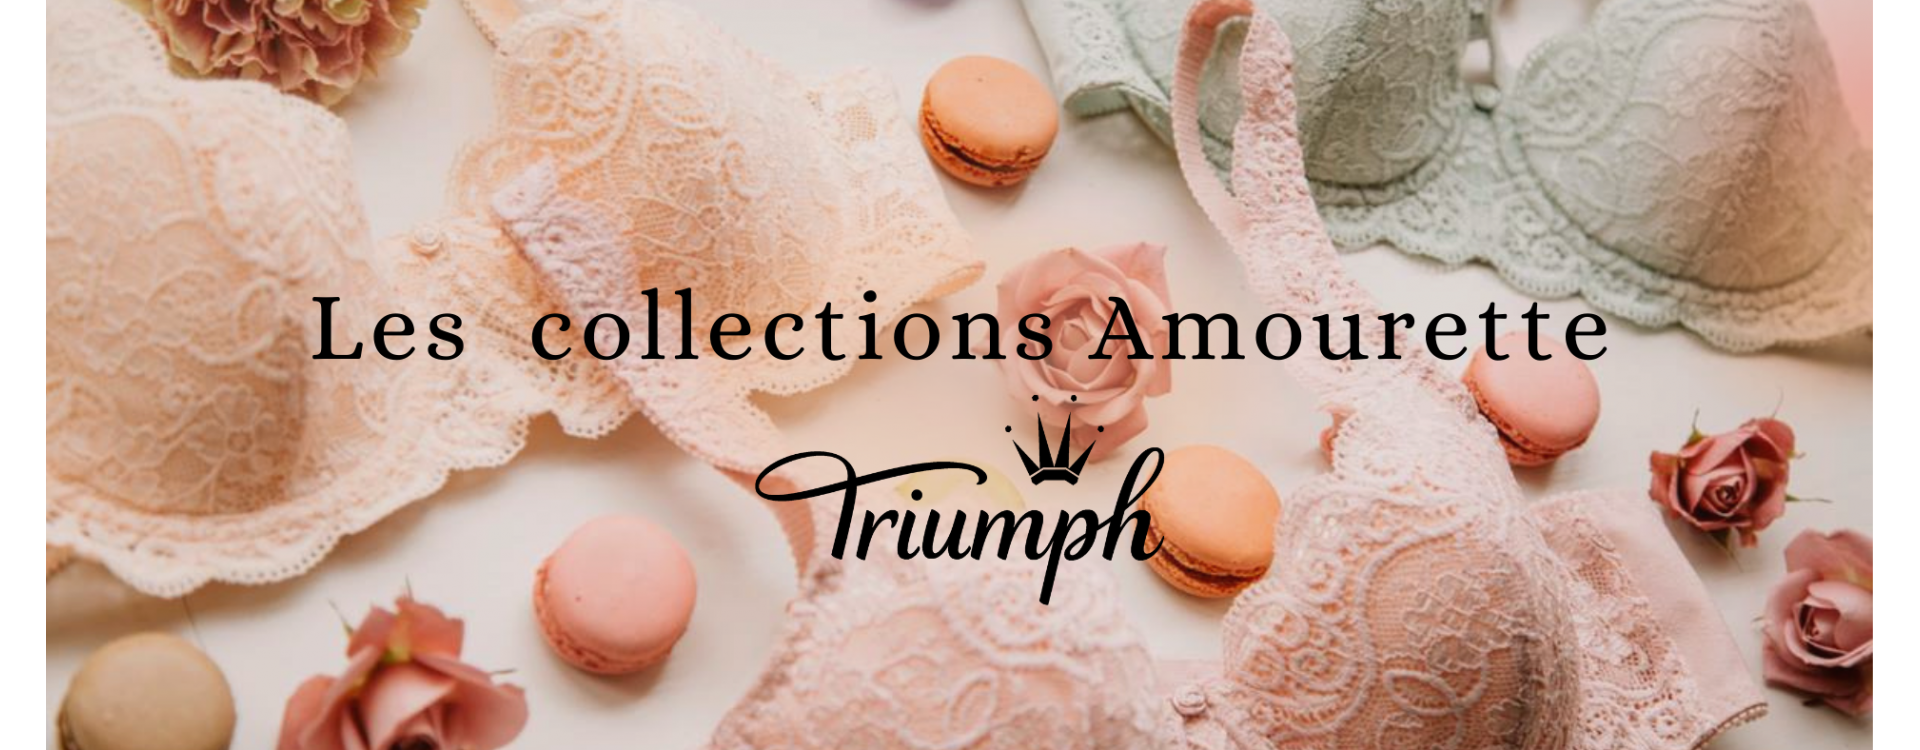 Les collections Amourette de Triumph